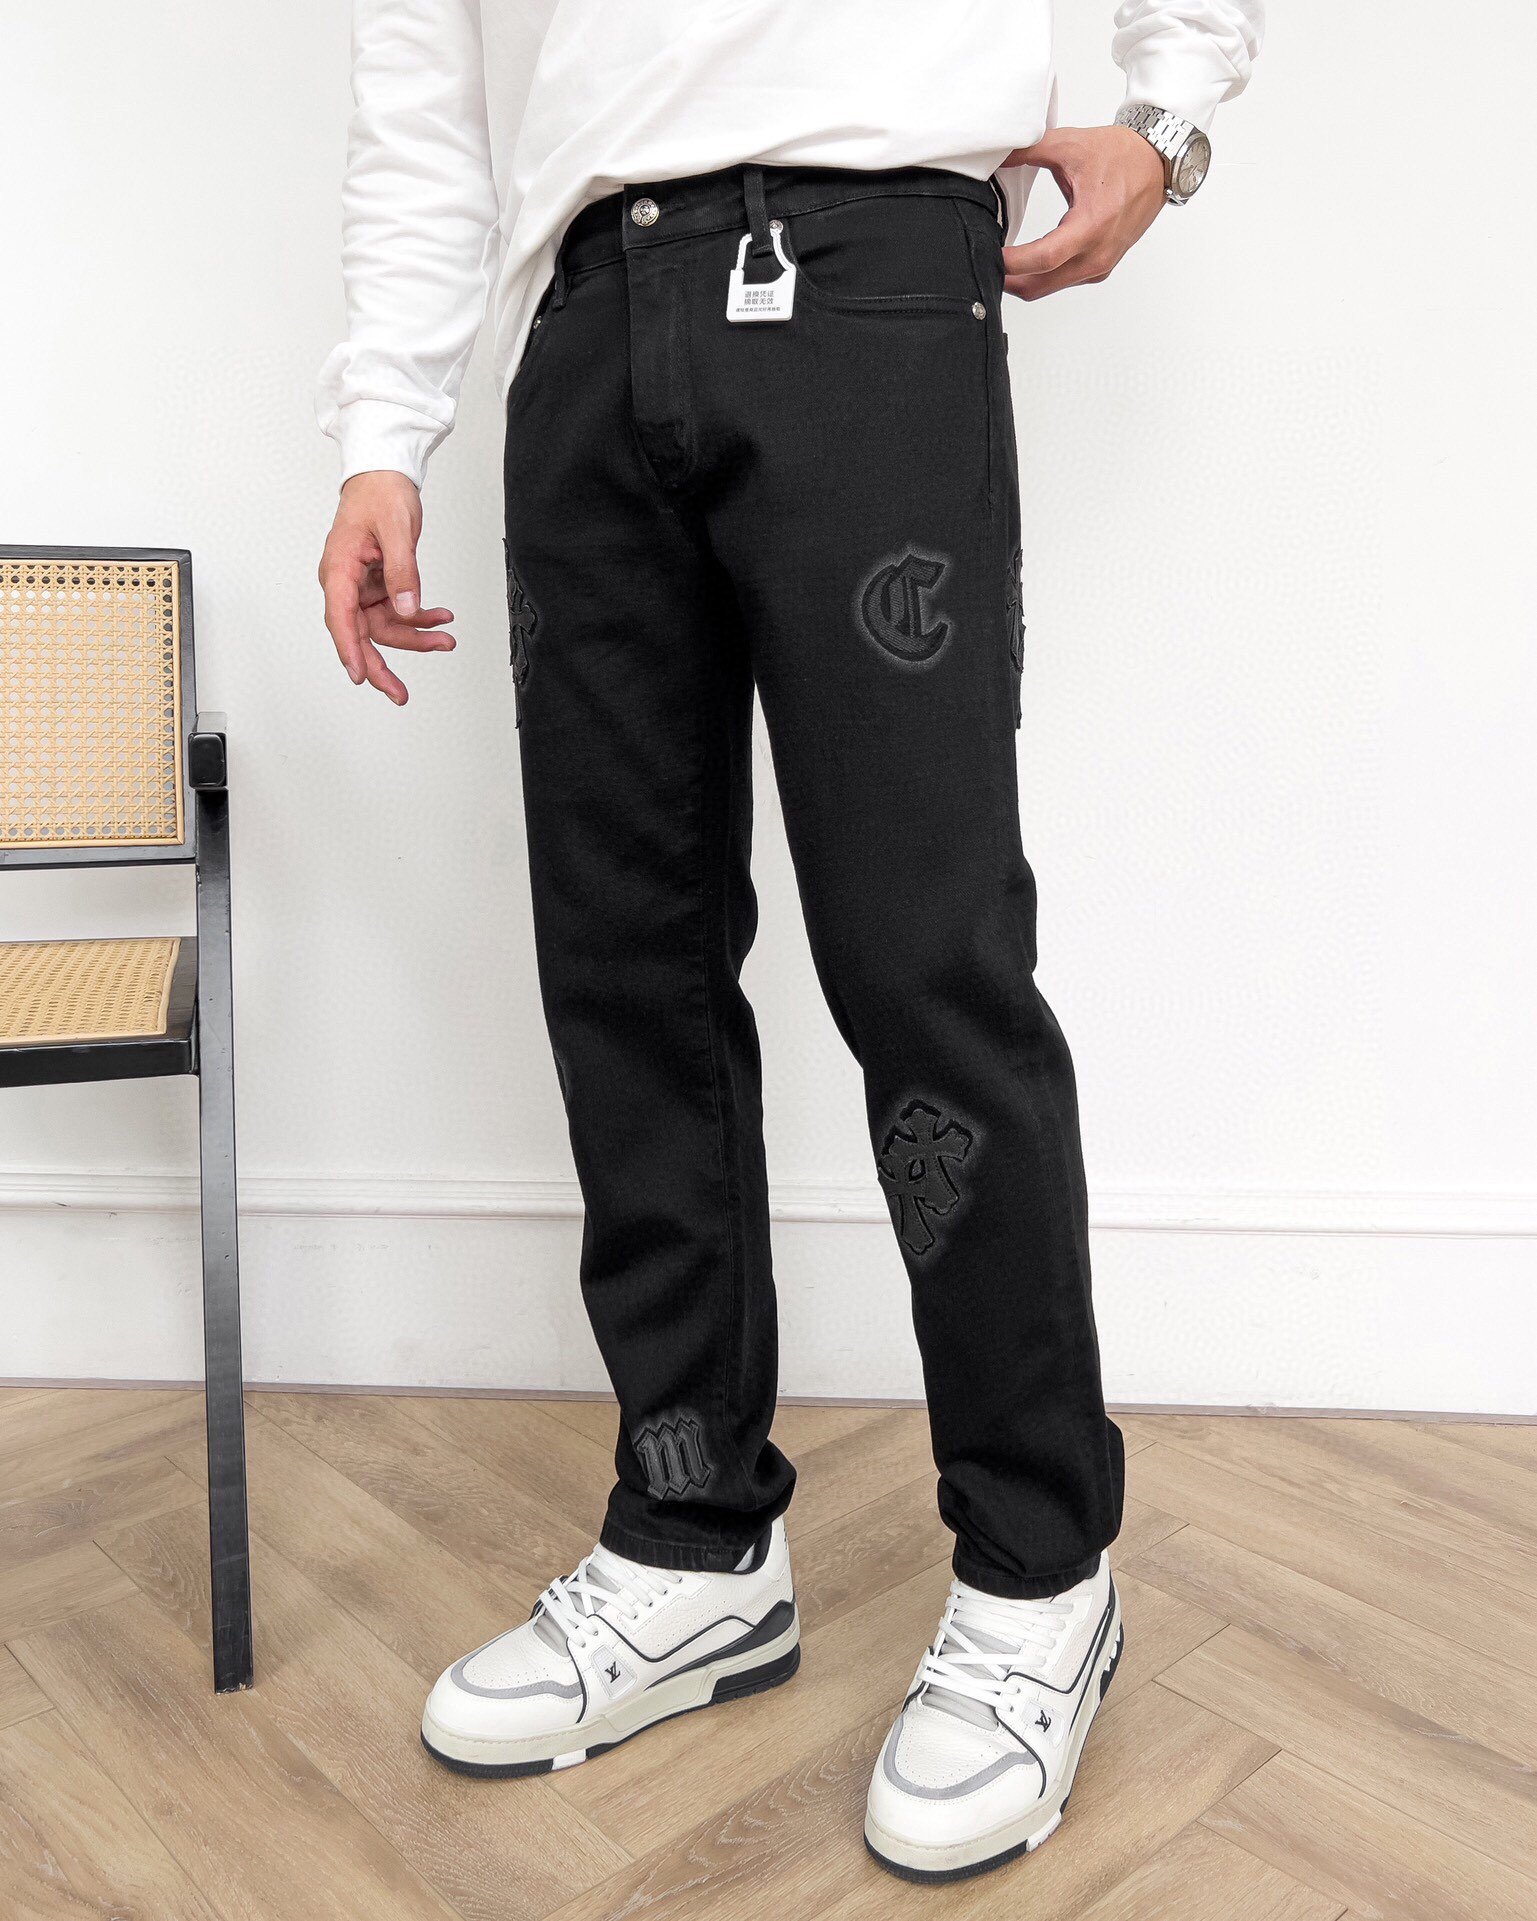 品牌CH季度2024春夏颜色黑色尺码29-36码裤型修身修脚版牛仔裤重量13.5盎司中弹牛仔成分71.6